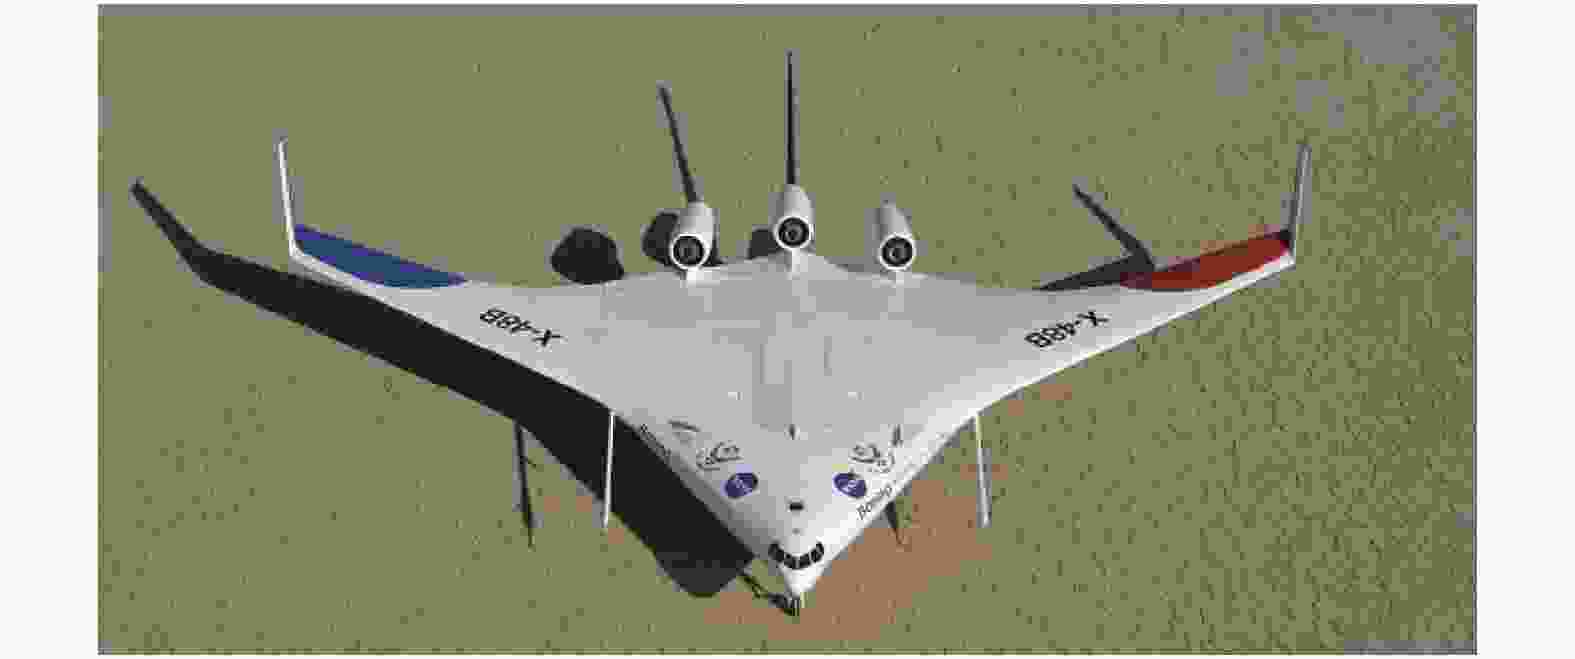 飞翼布局翼型系列设计进展